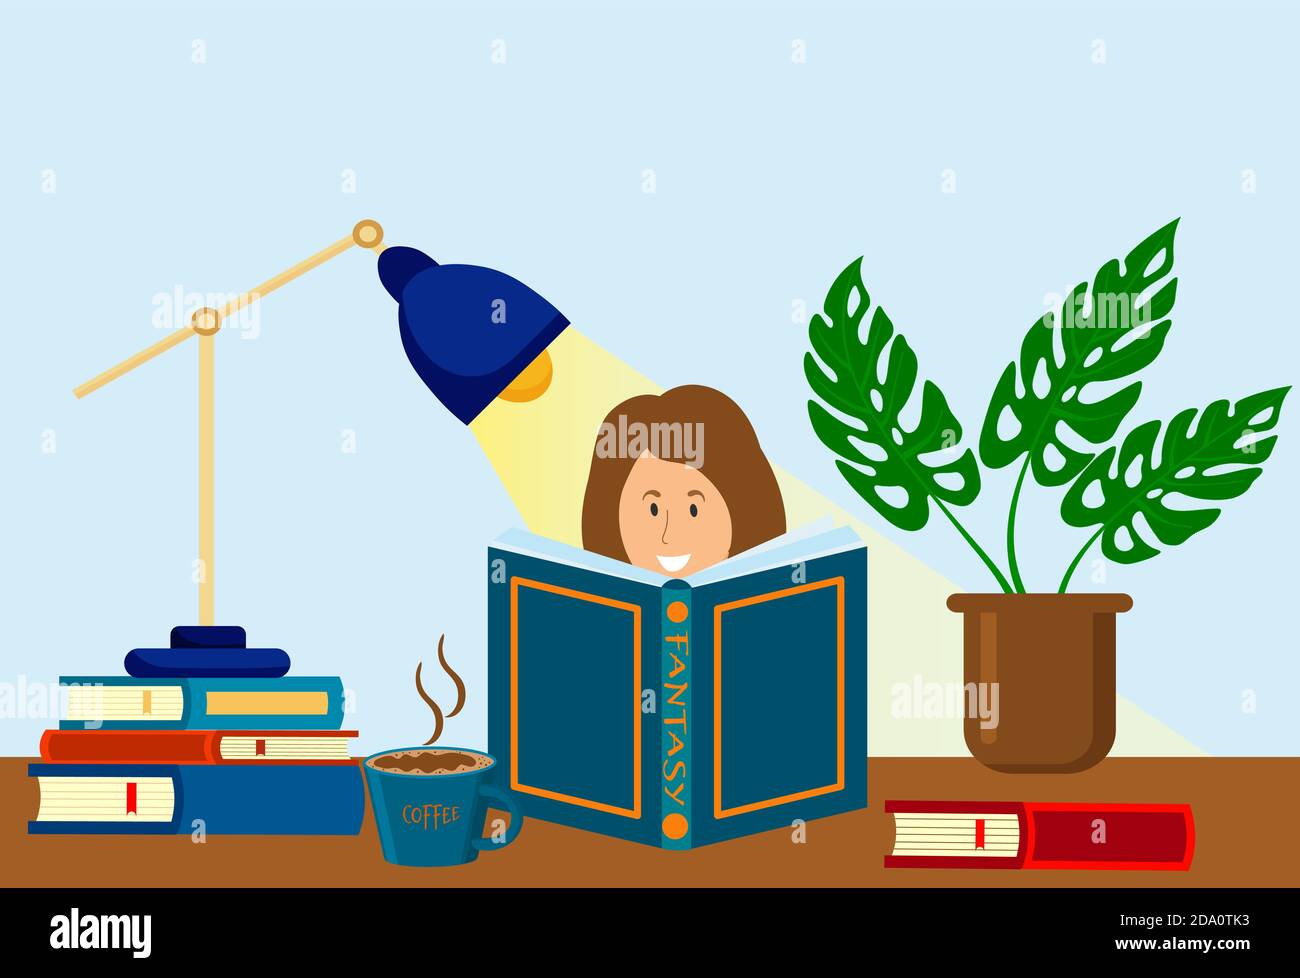 La femme est en train de lire un livre, à côté d'une pile de livres, une plante de maison, un cofee et une lampe de table. Connaissance, éducation, concept d'étude. Illustration vectorielle plate. Illustration de Vecteur